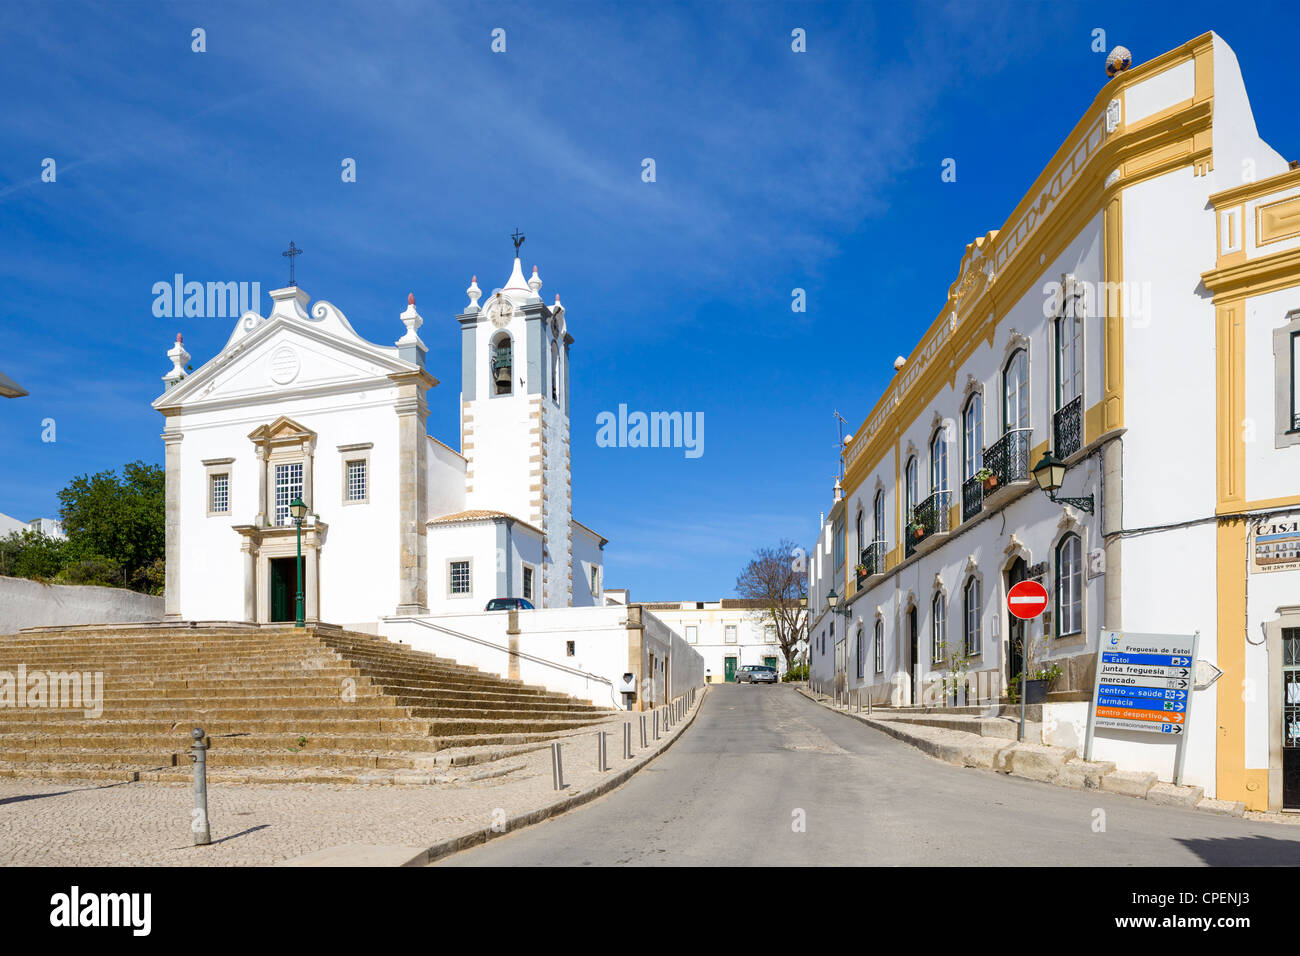 Centre of the village of Estoi, Algarve, Portugal Stock Photo